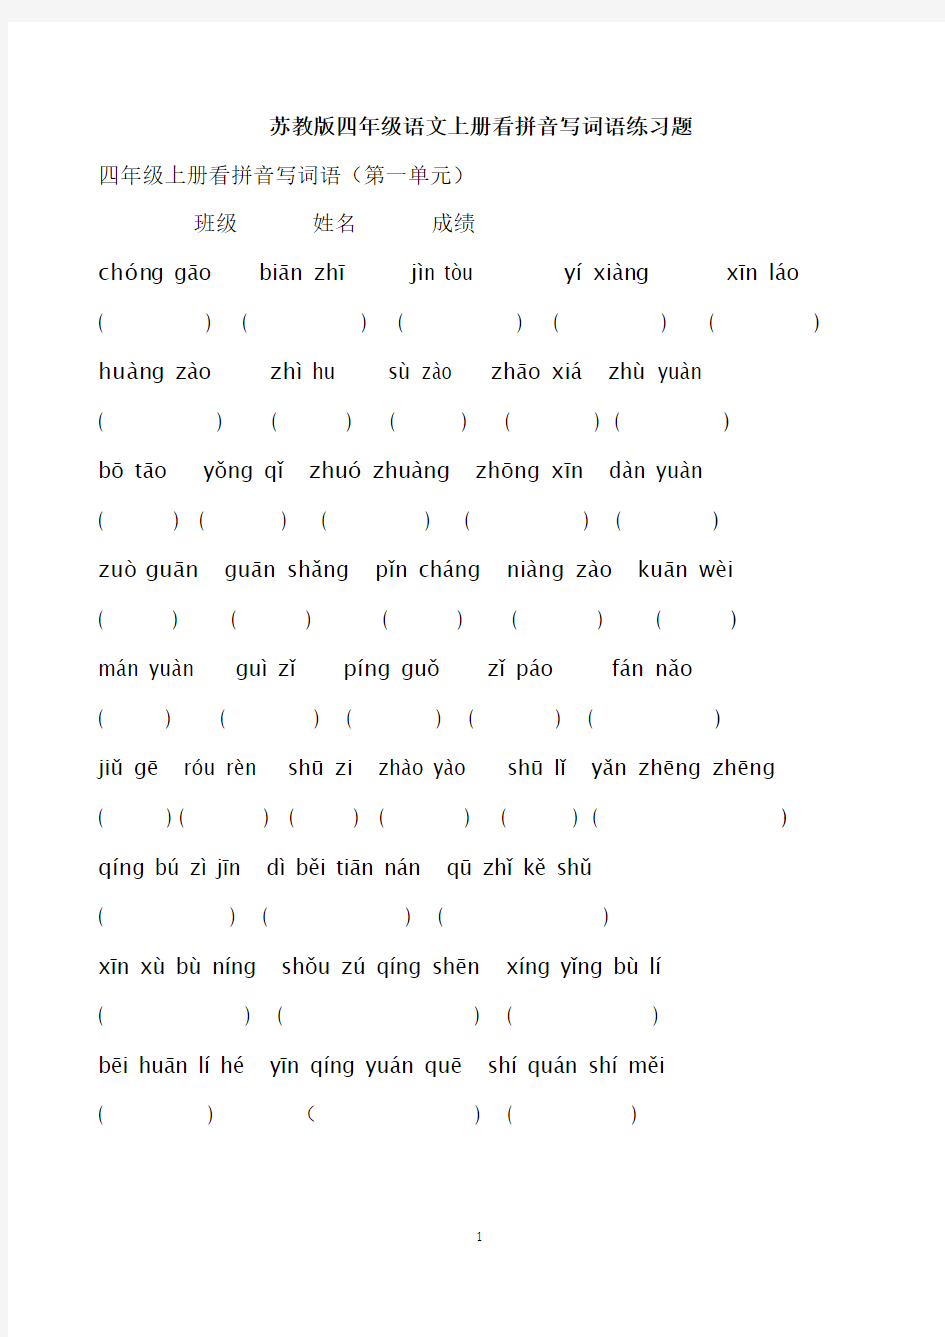 苏教版小学四年级语文上册1-8单元看拼音写词语练习题[1]